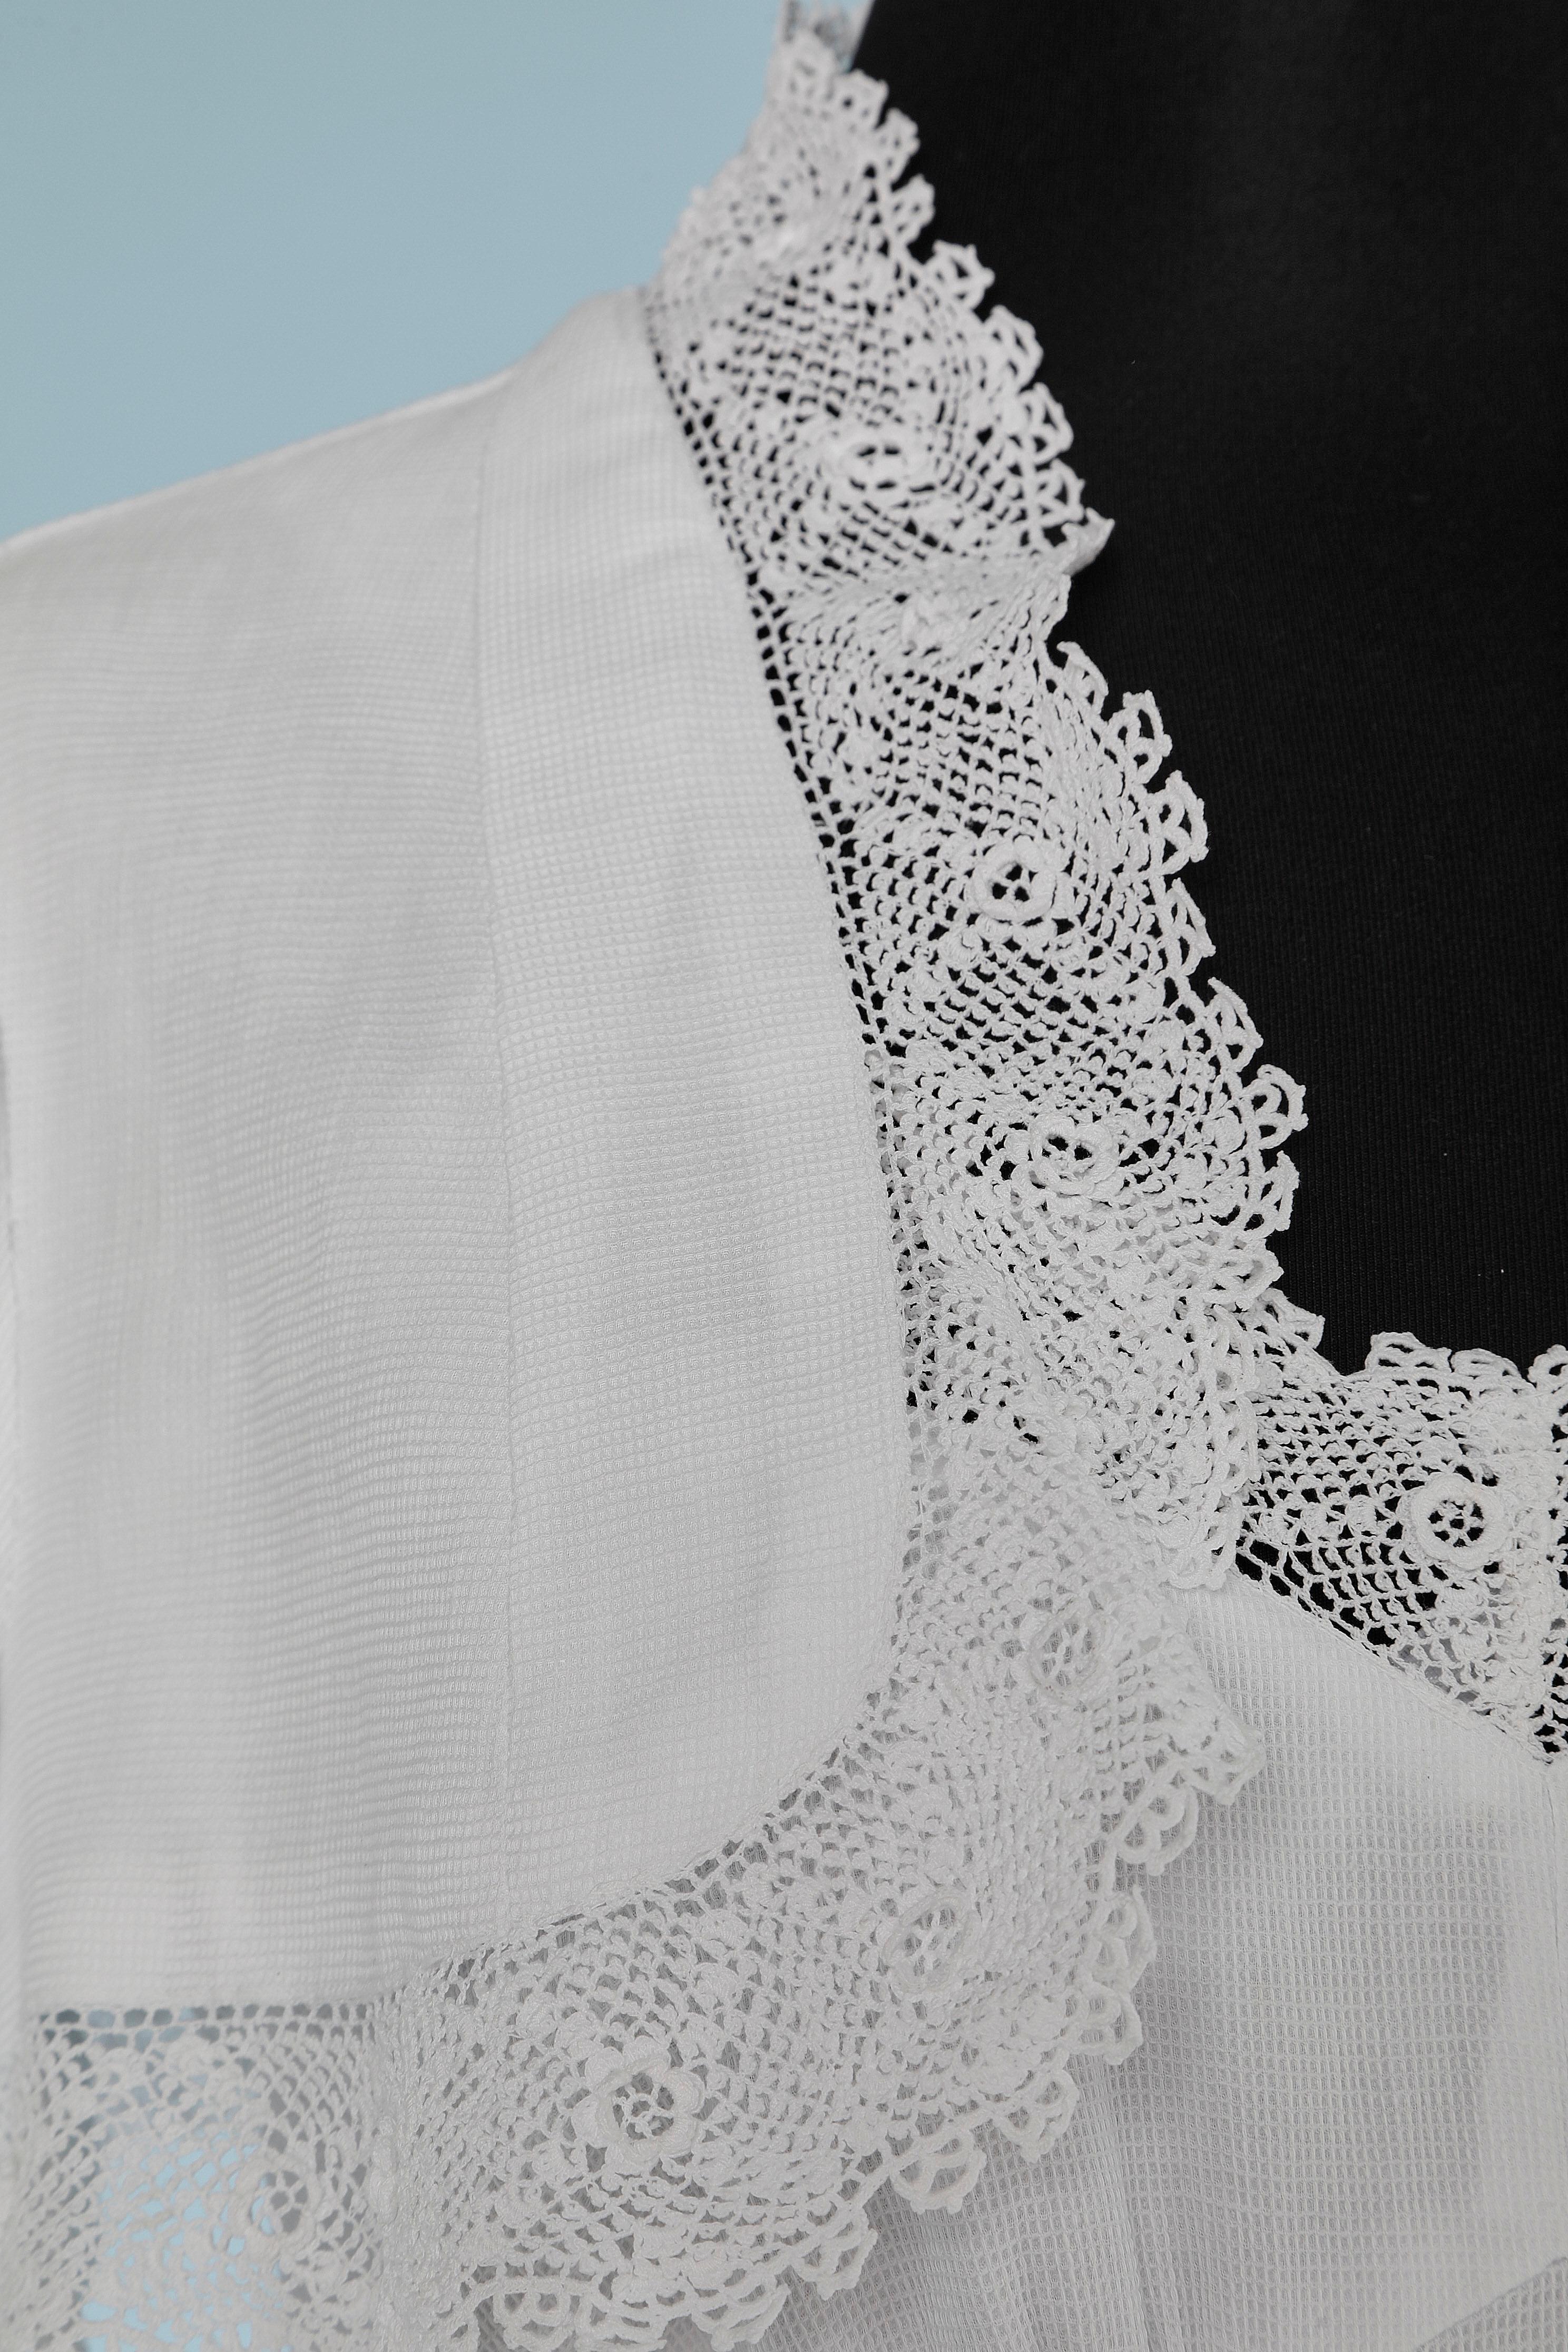 Robe de mariée en piqué de coton blanc avec bord en dentelle (crochet irlandais fait main) et boléro.Fermeture éclair au milieu du dos. TAILLE M
